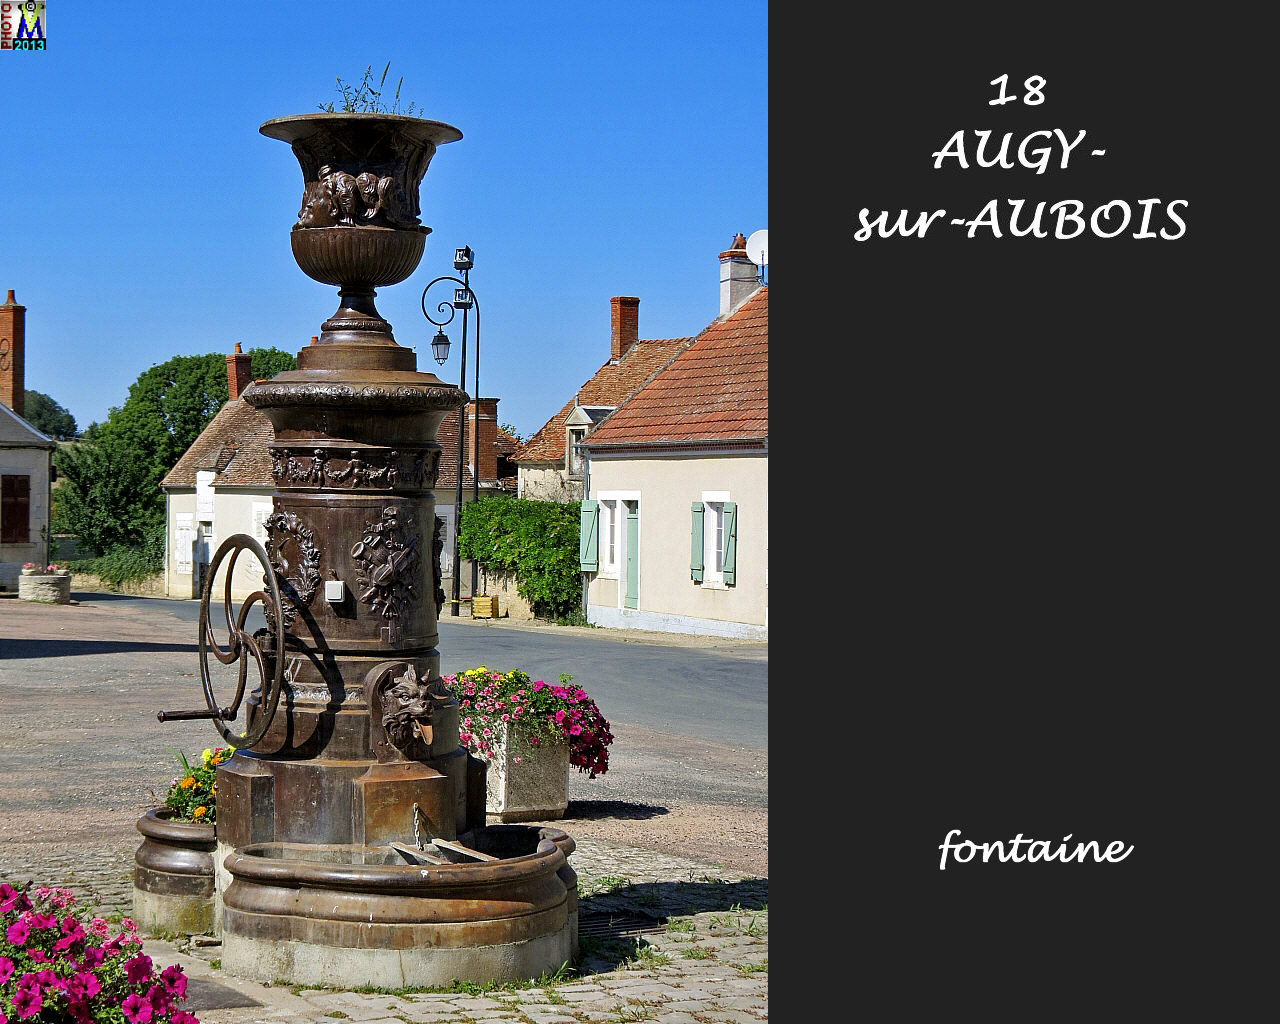 18AUGY-AUBOIS_fontaine_100.jpg